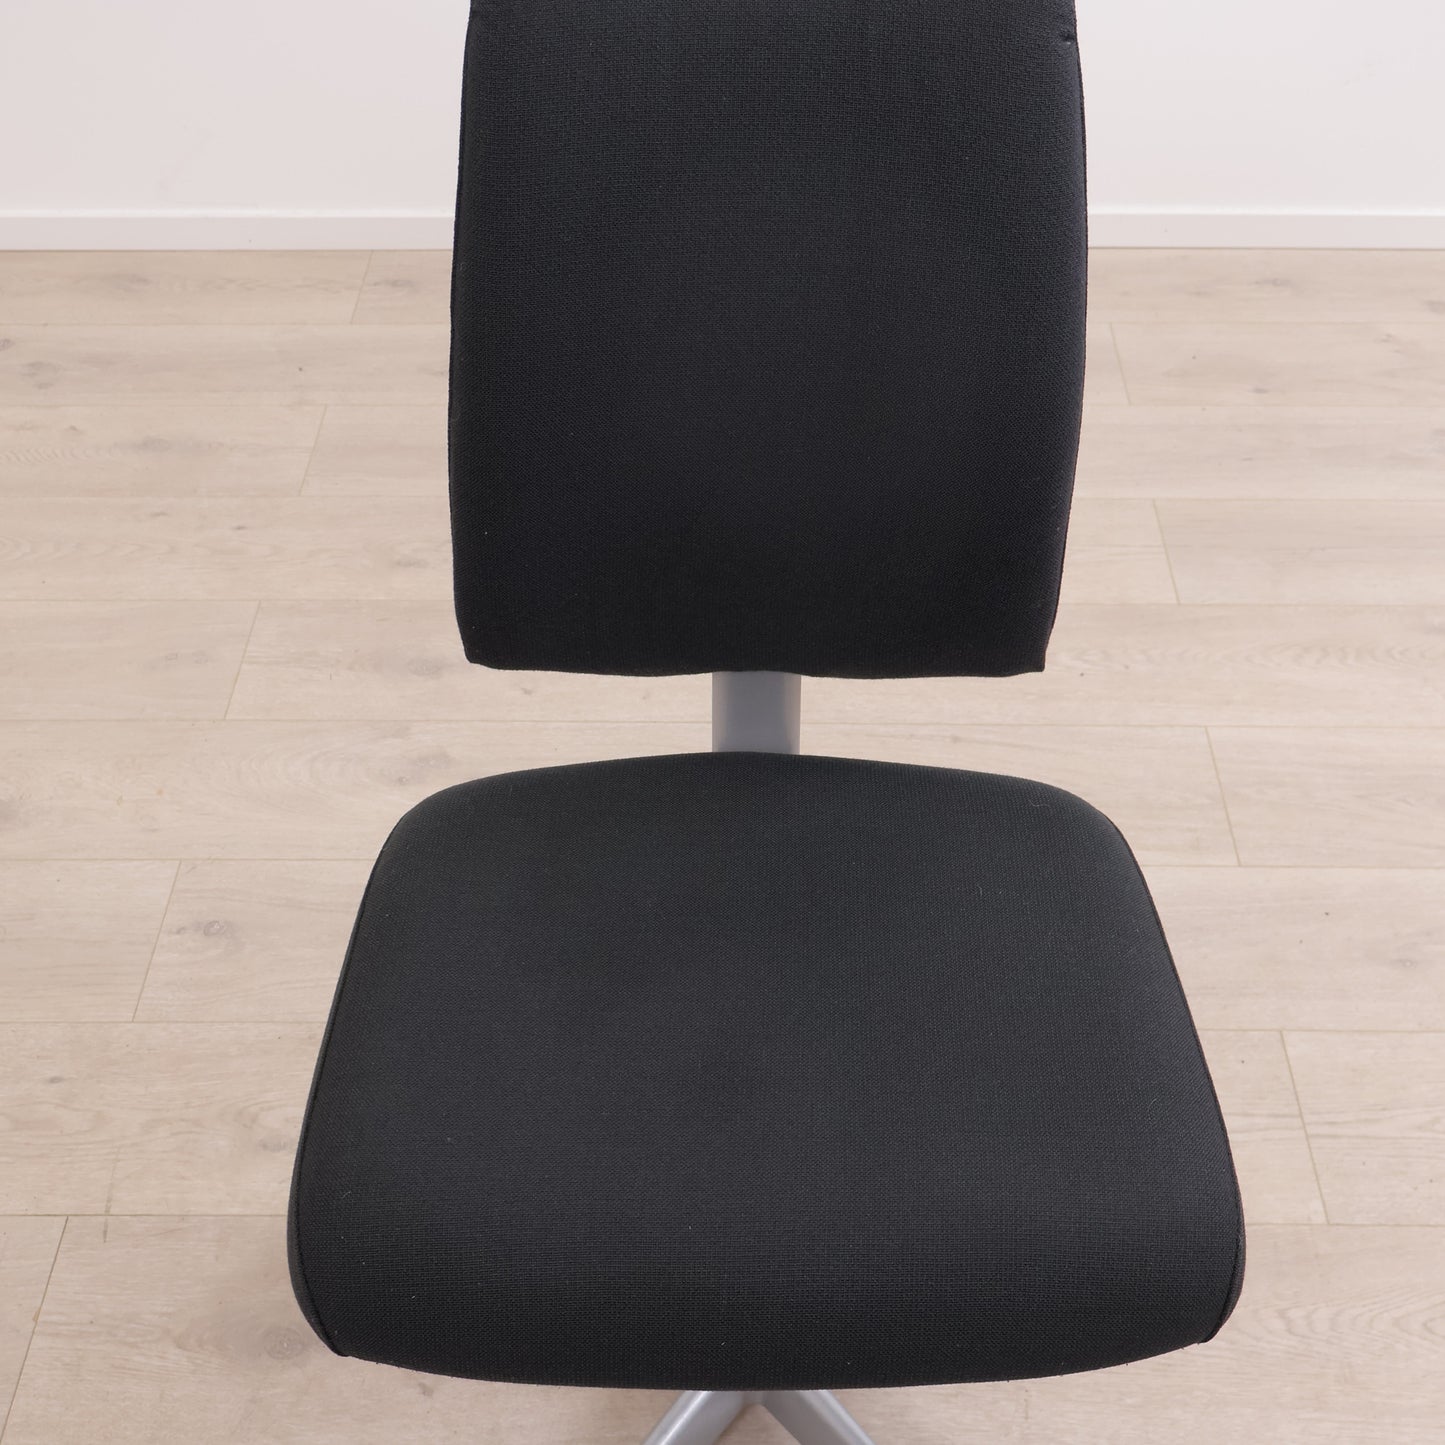 Nyrenset | Håg H05 (5500) kontorstol med grått understell